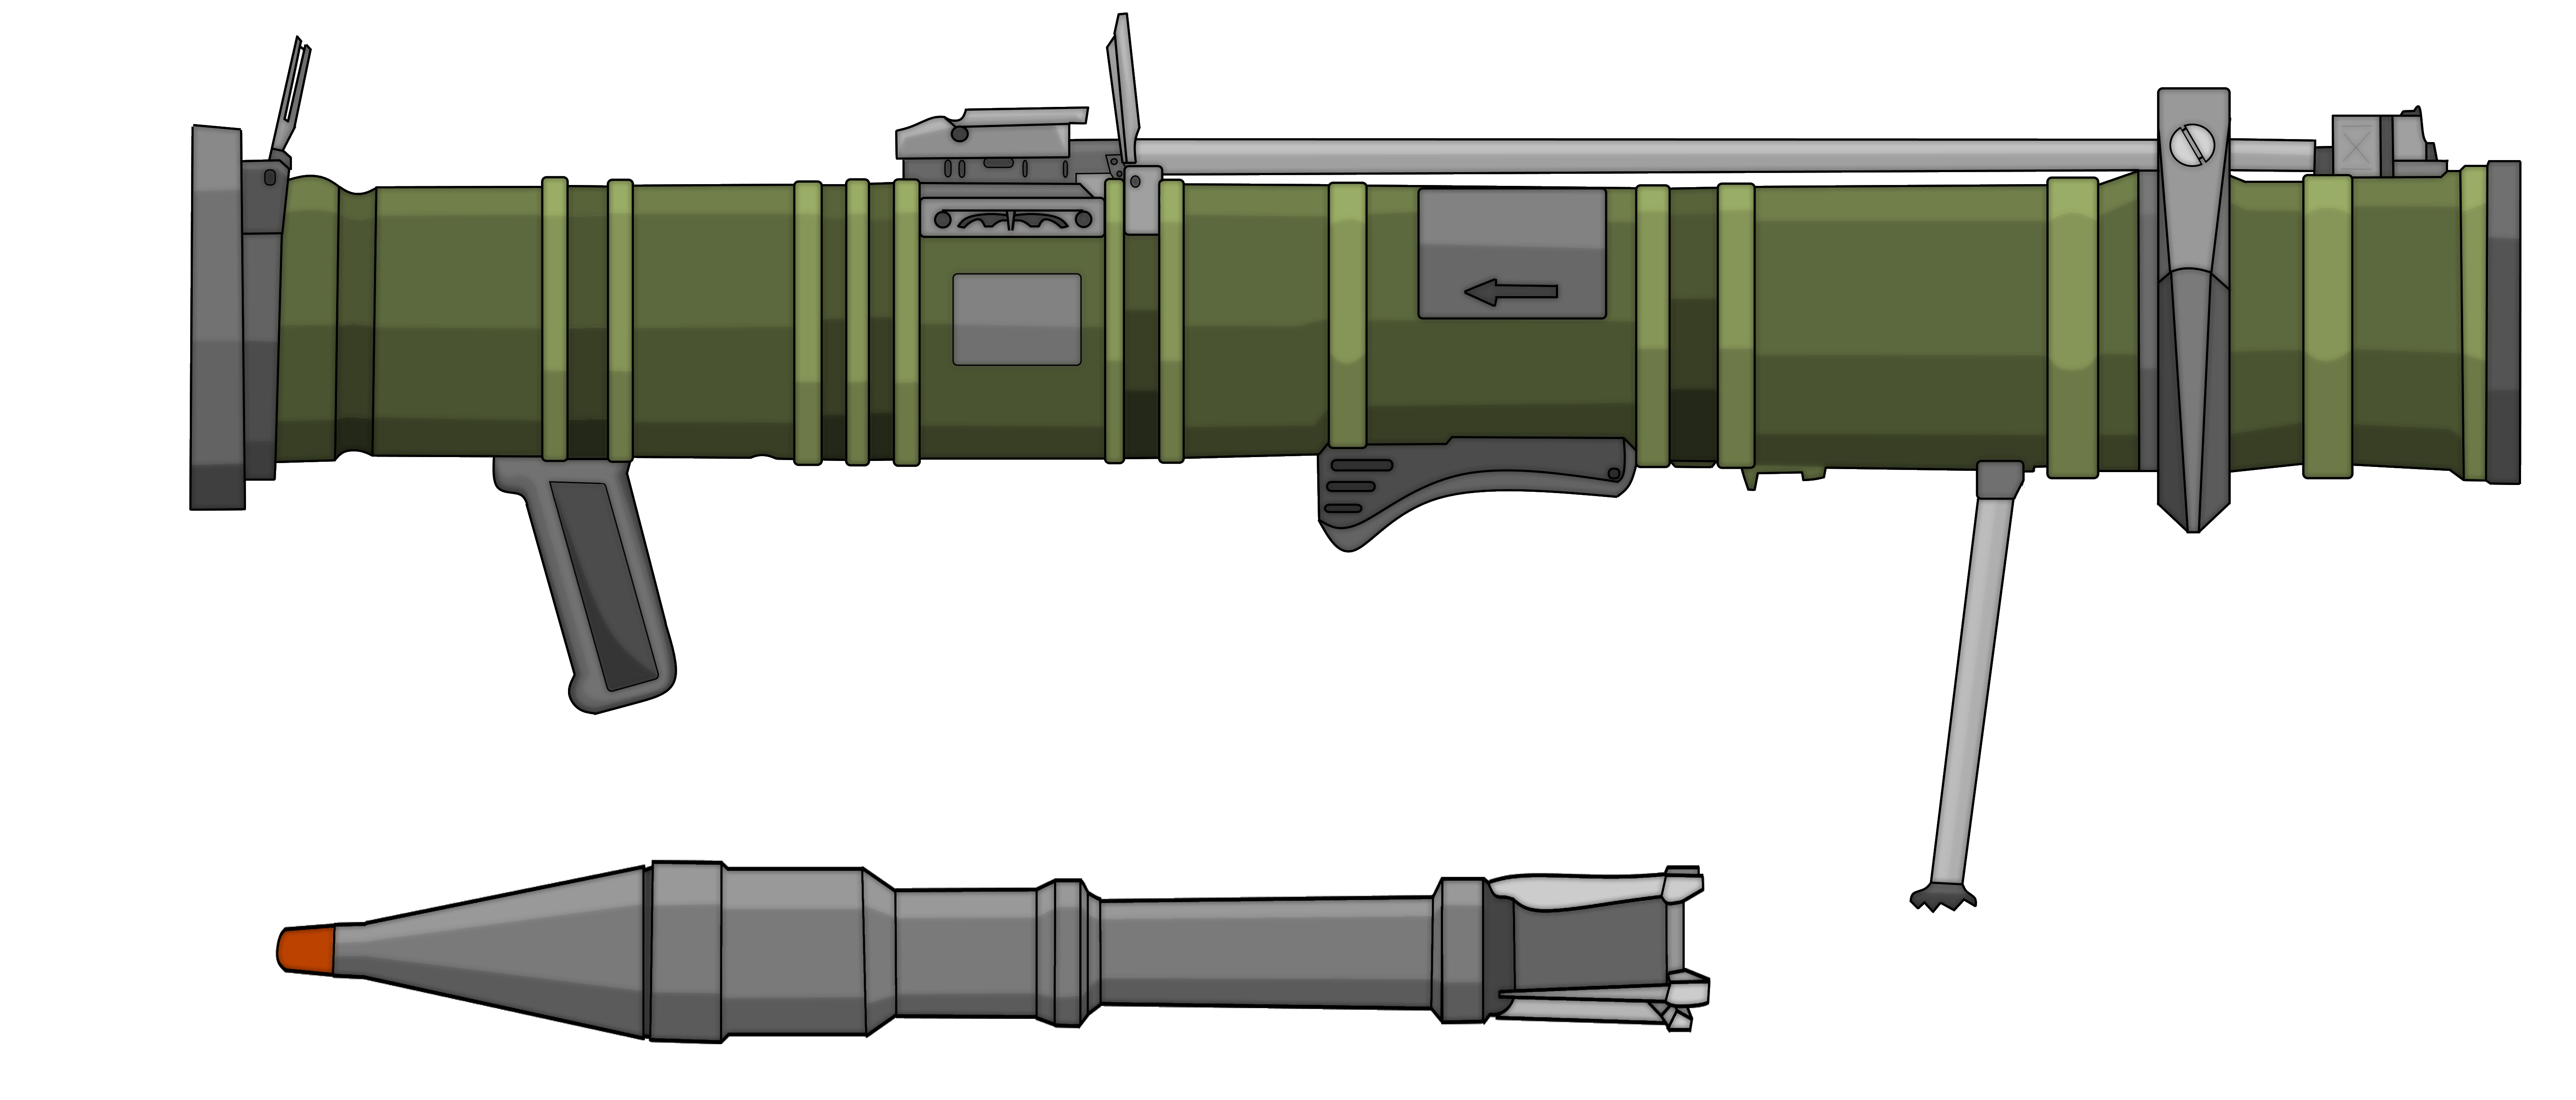 РПГ 7 базука. Гранатомет базука. РПГ-27 гранатомёт. РПГ-6 граната. Rpg картинка